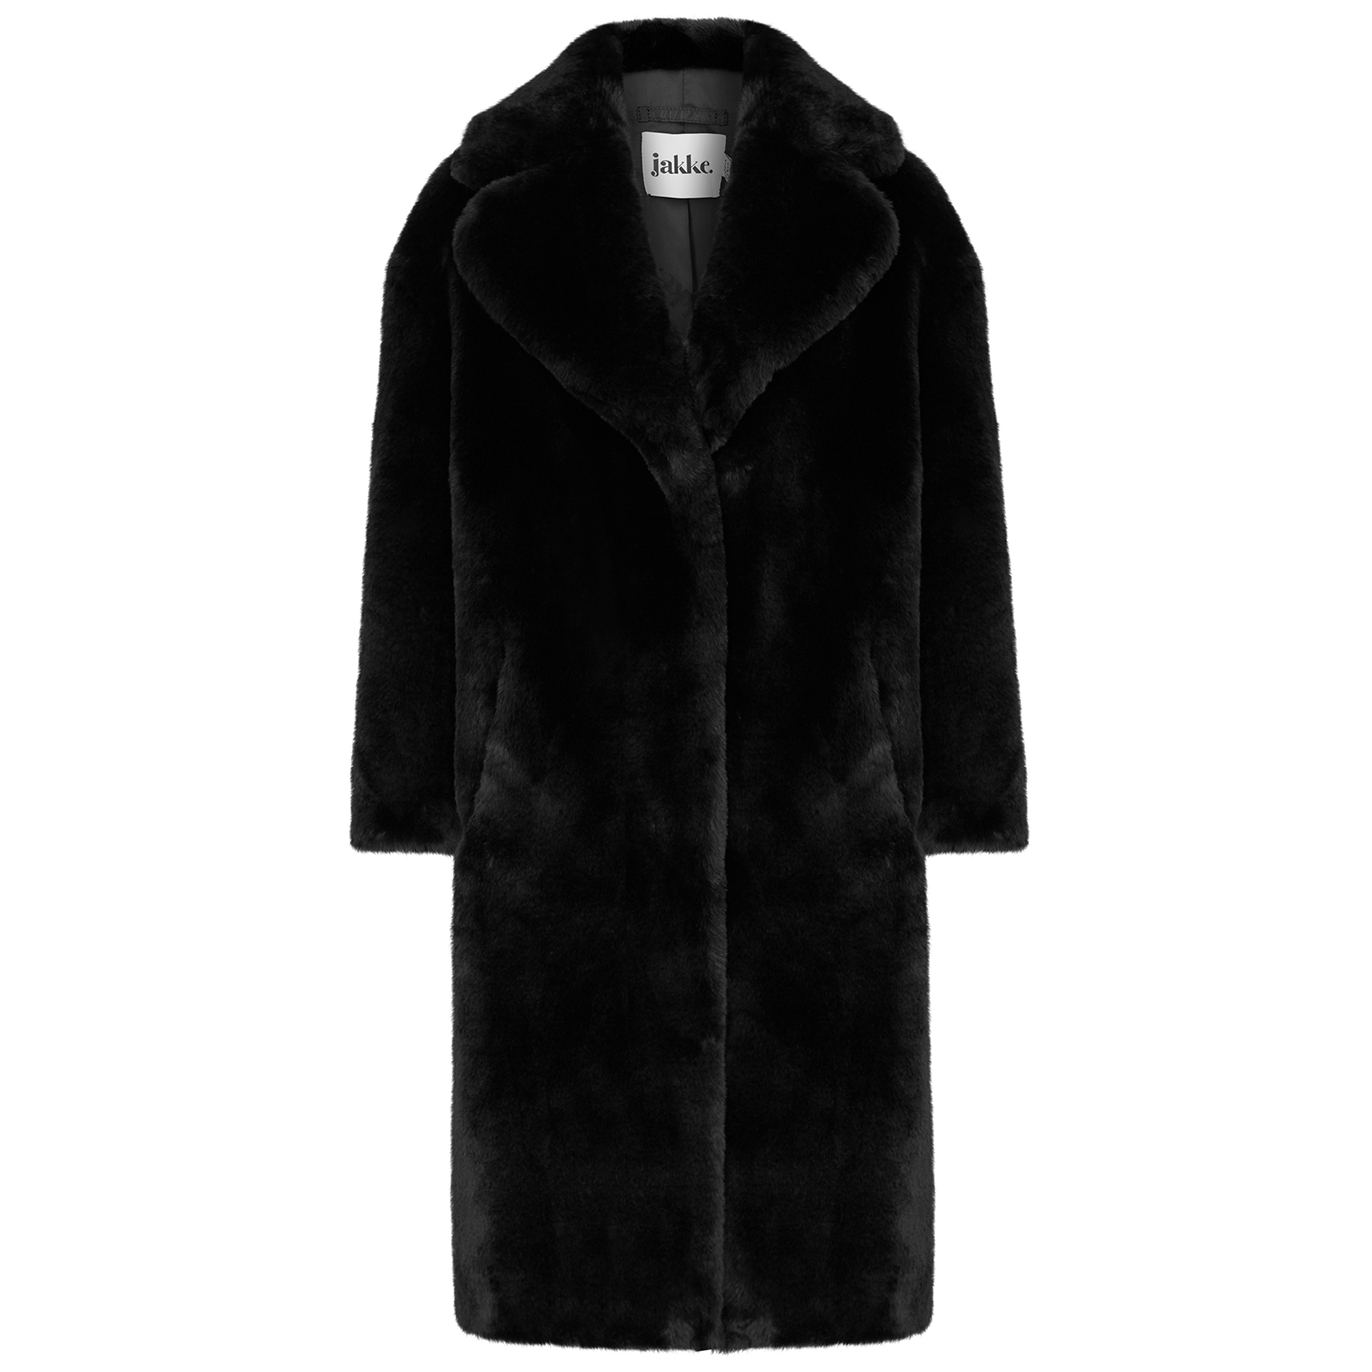 Jakke Katie Black Faux Fur Coat - S